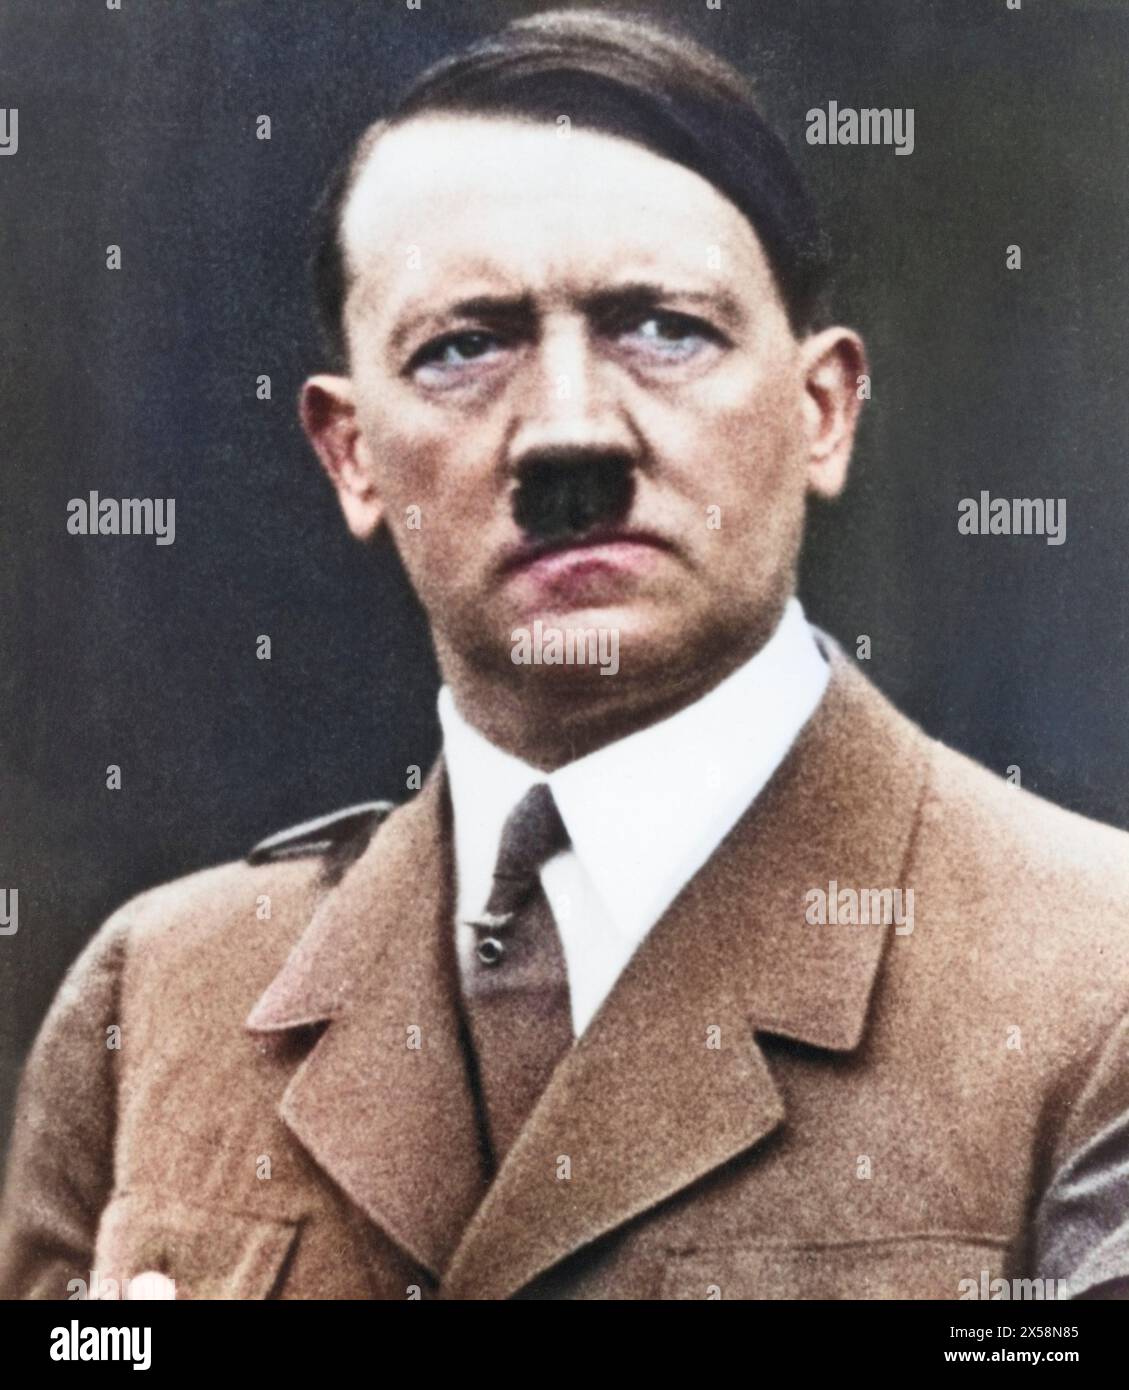 Hitler, Adolf, 20.4.1889 - 30.4,1945, homme politique allemand (NSDAP), chancelier du Reich 30.1.1933 - 30.4,1945, portrait, années 1930, USAGE ÉDITORIAL EXCLUSIF Banque D'Images